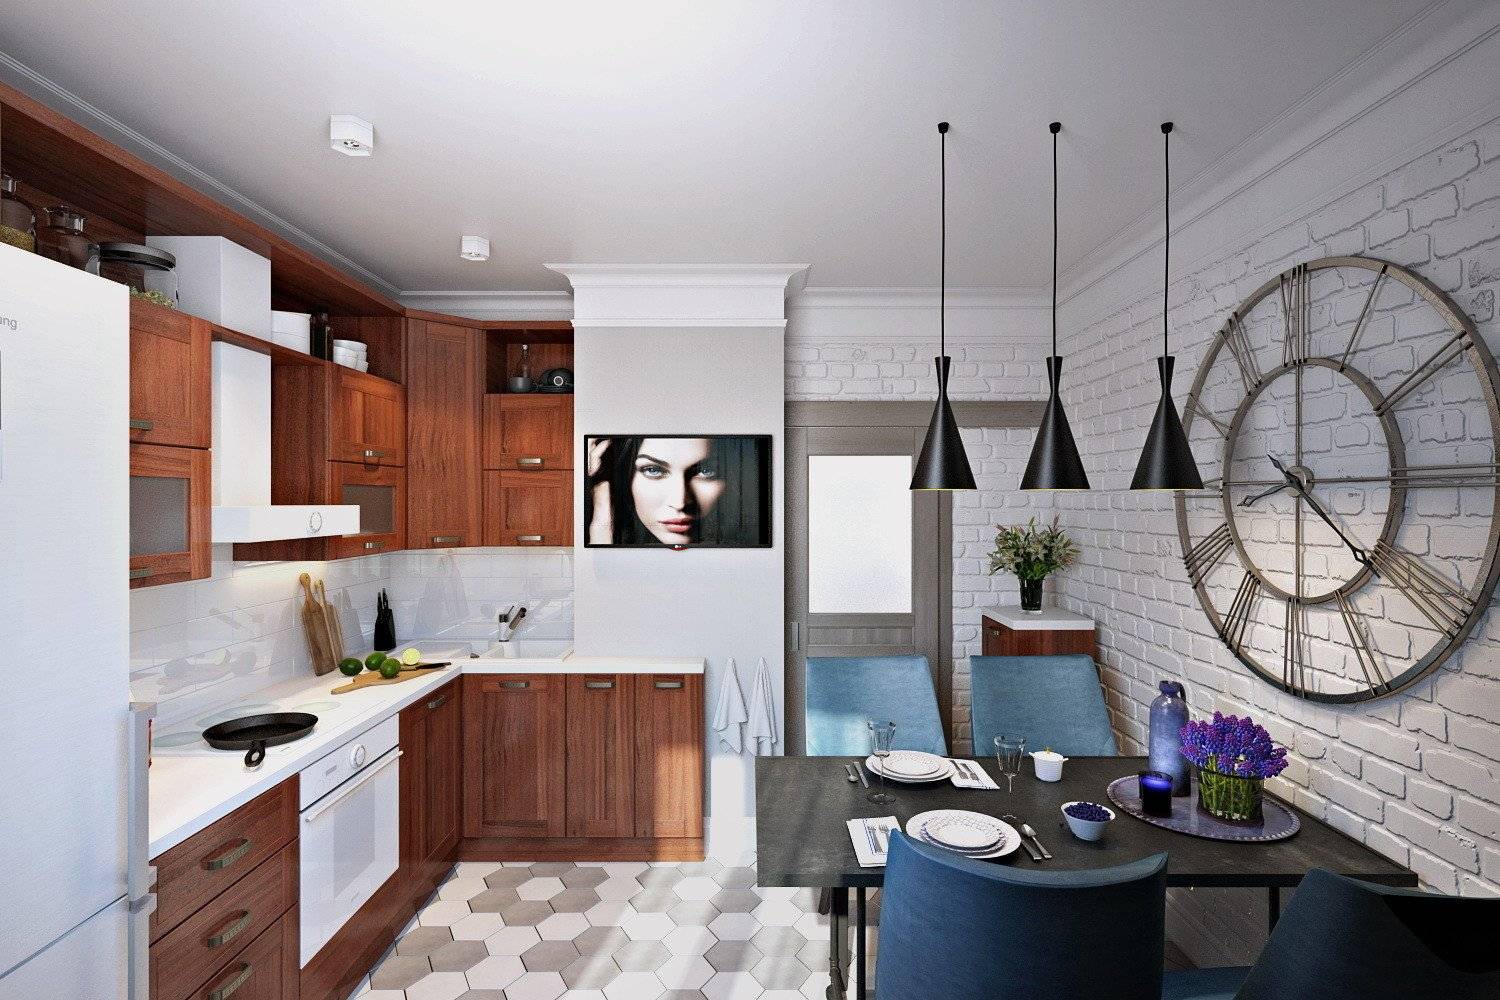 Дизайн кухни в квартире - какие зоны должны присутствовать, цветовая гамма, как правильно выбрать мебель и кухонный гарнитур, стиль интерьера